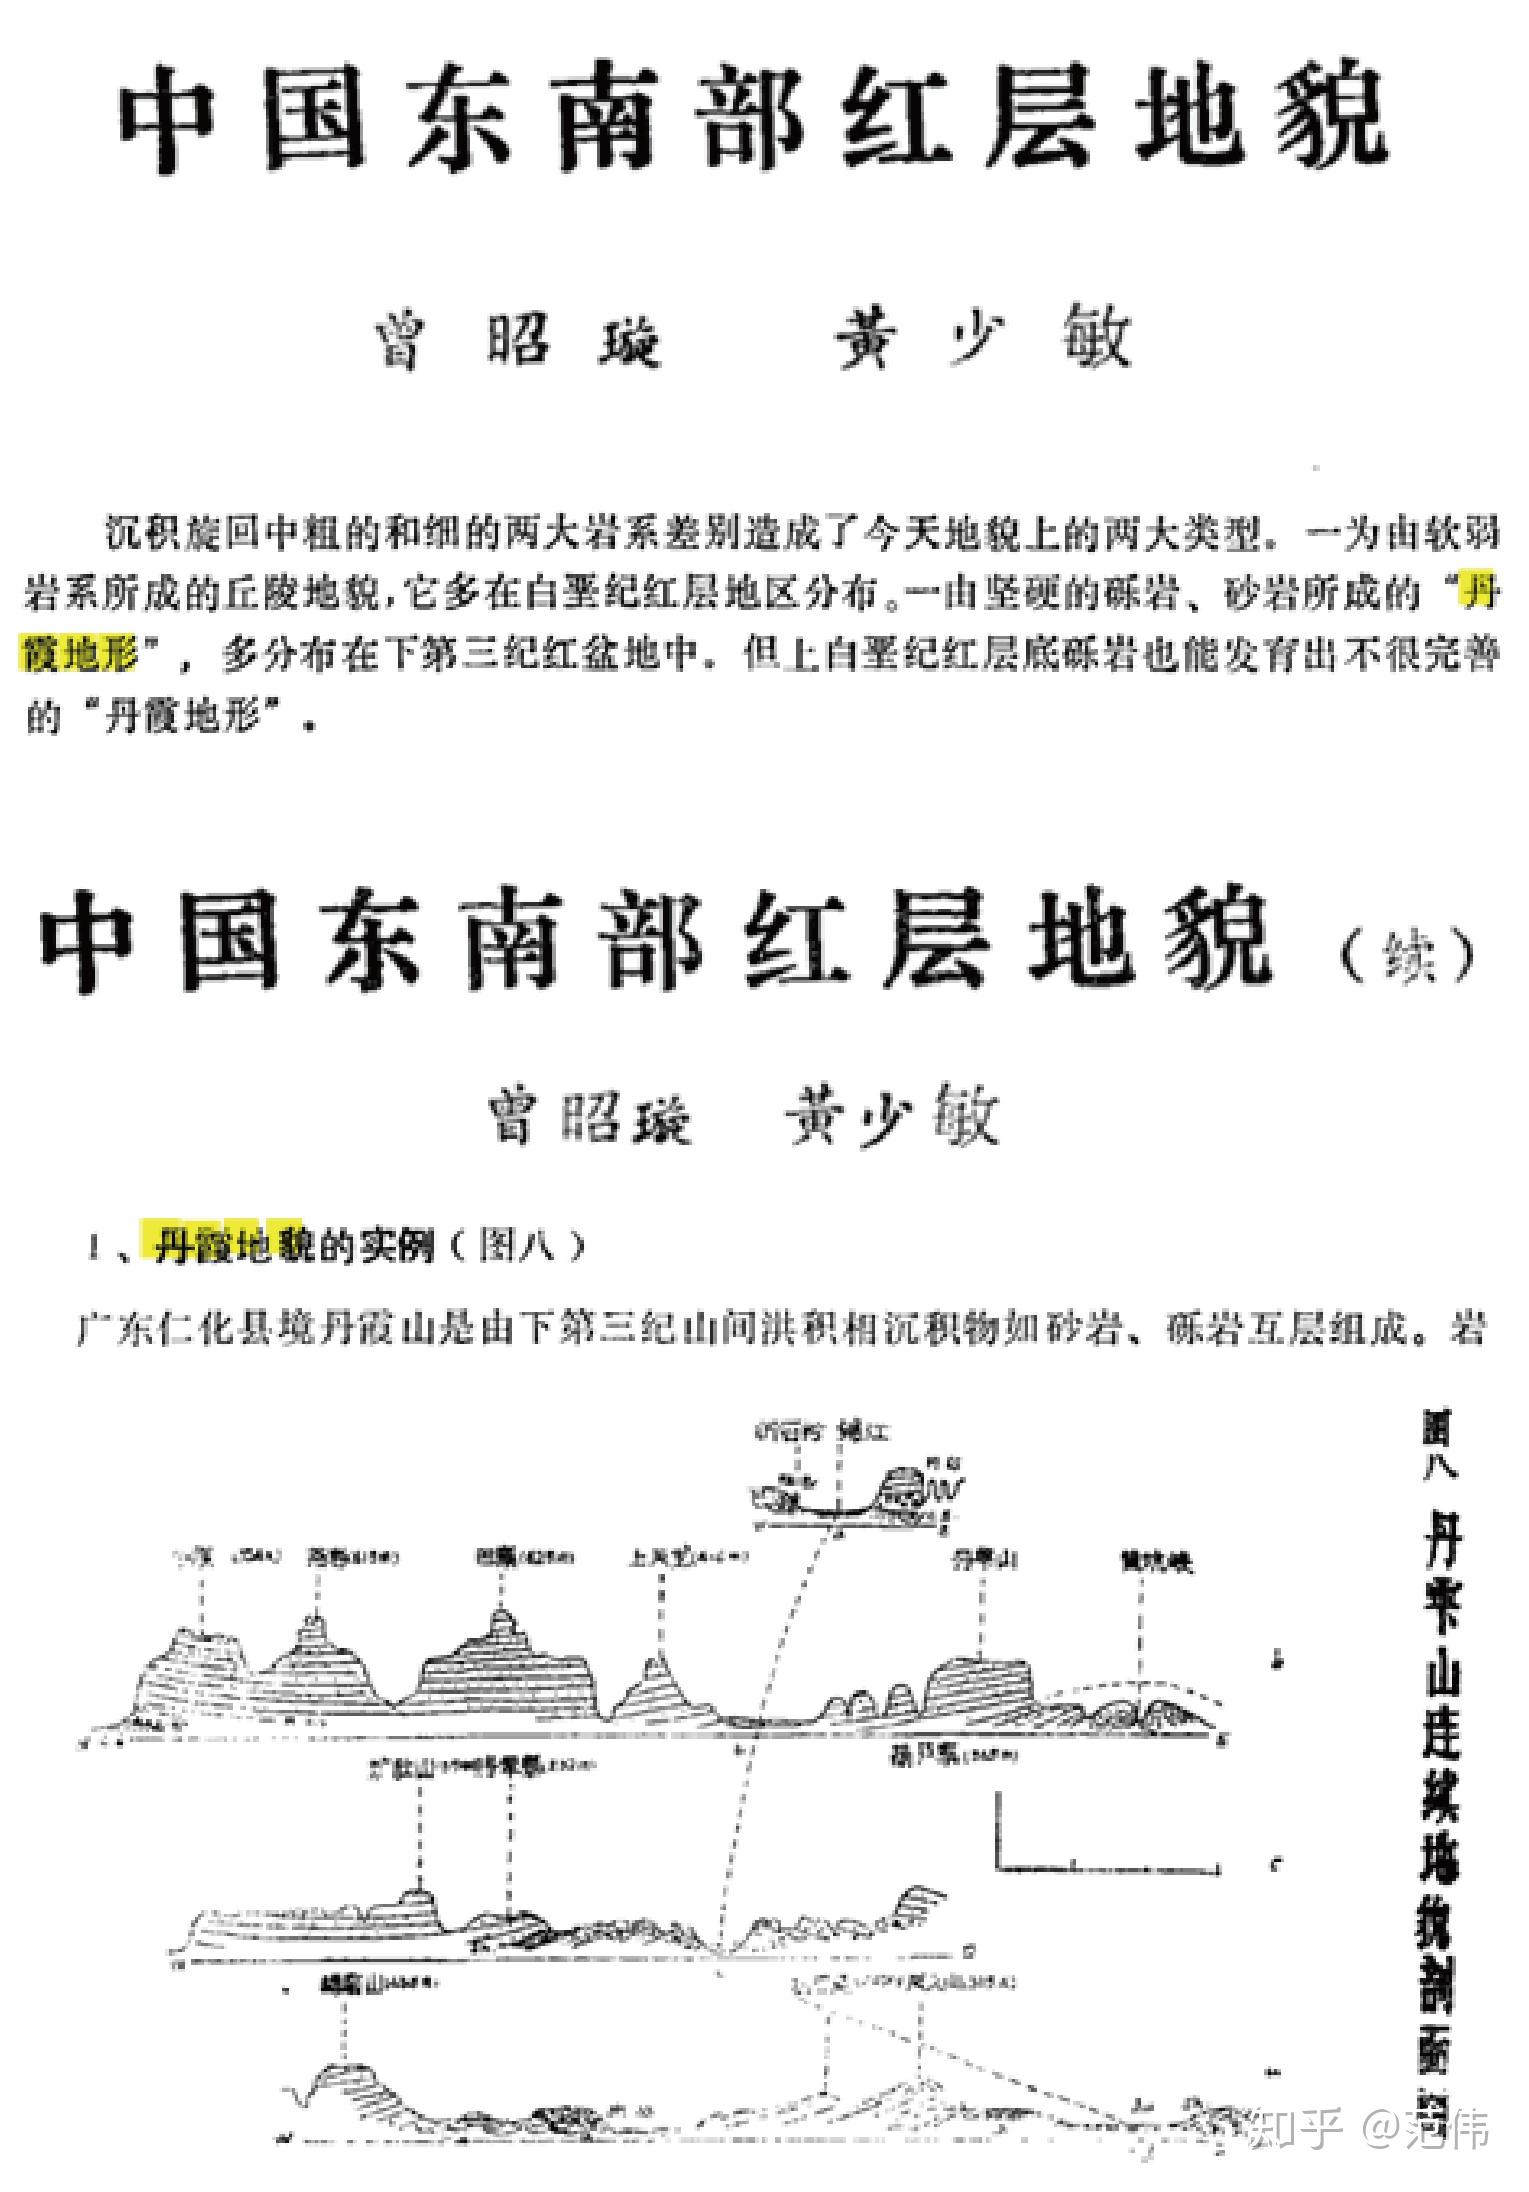 中山大学教授曾昭璇等发表《中国东南部红层地貌》,对丹霞地形的特征